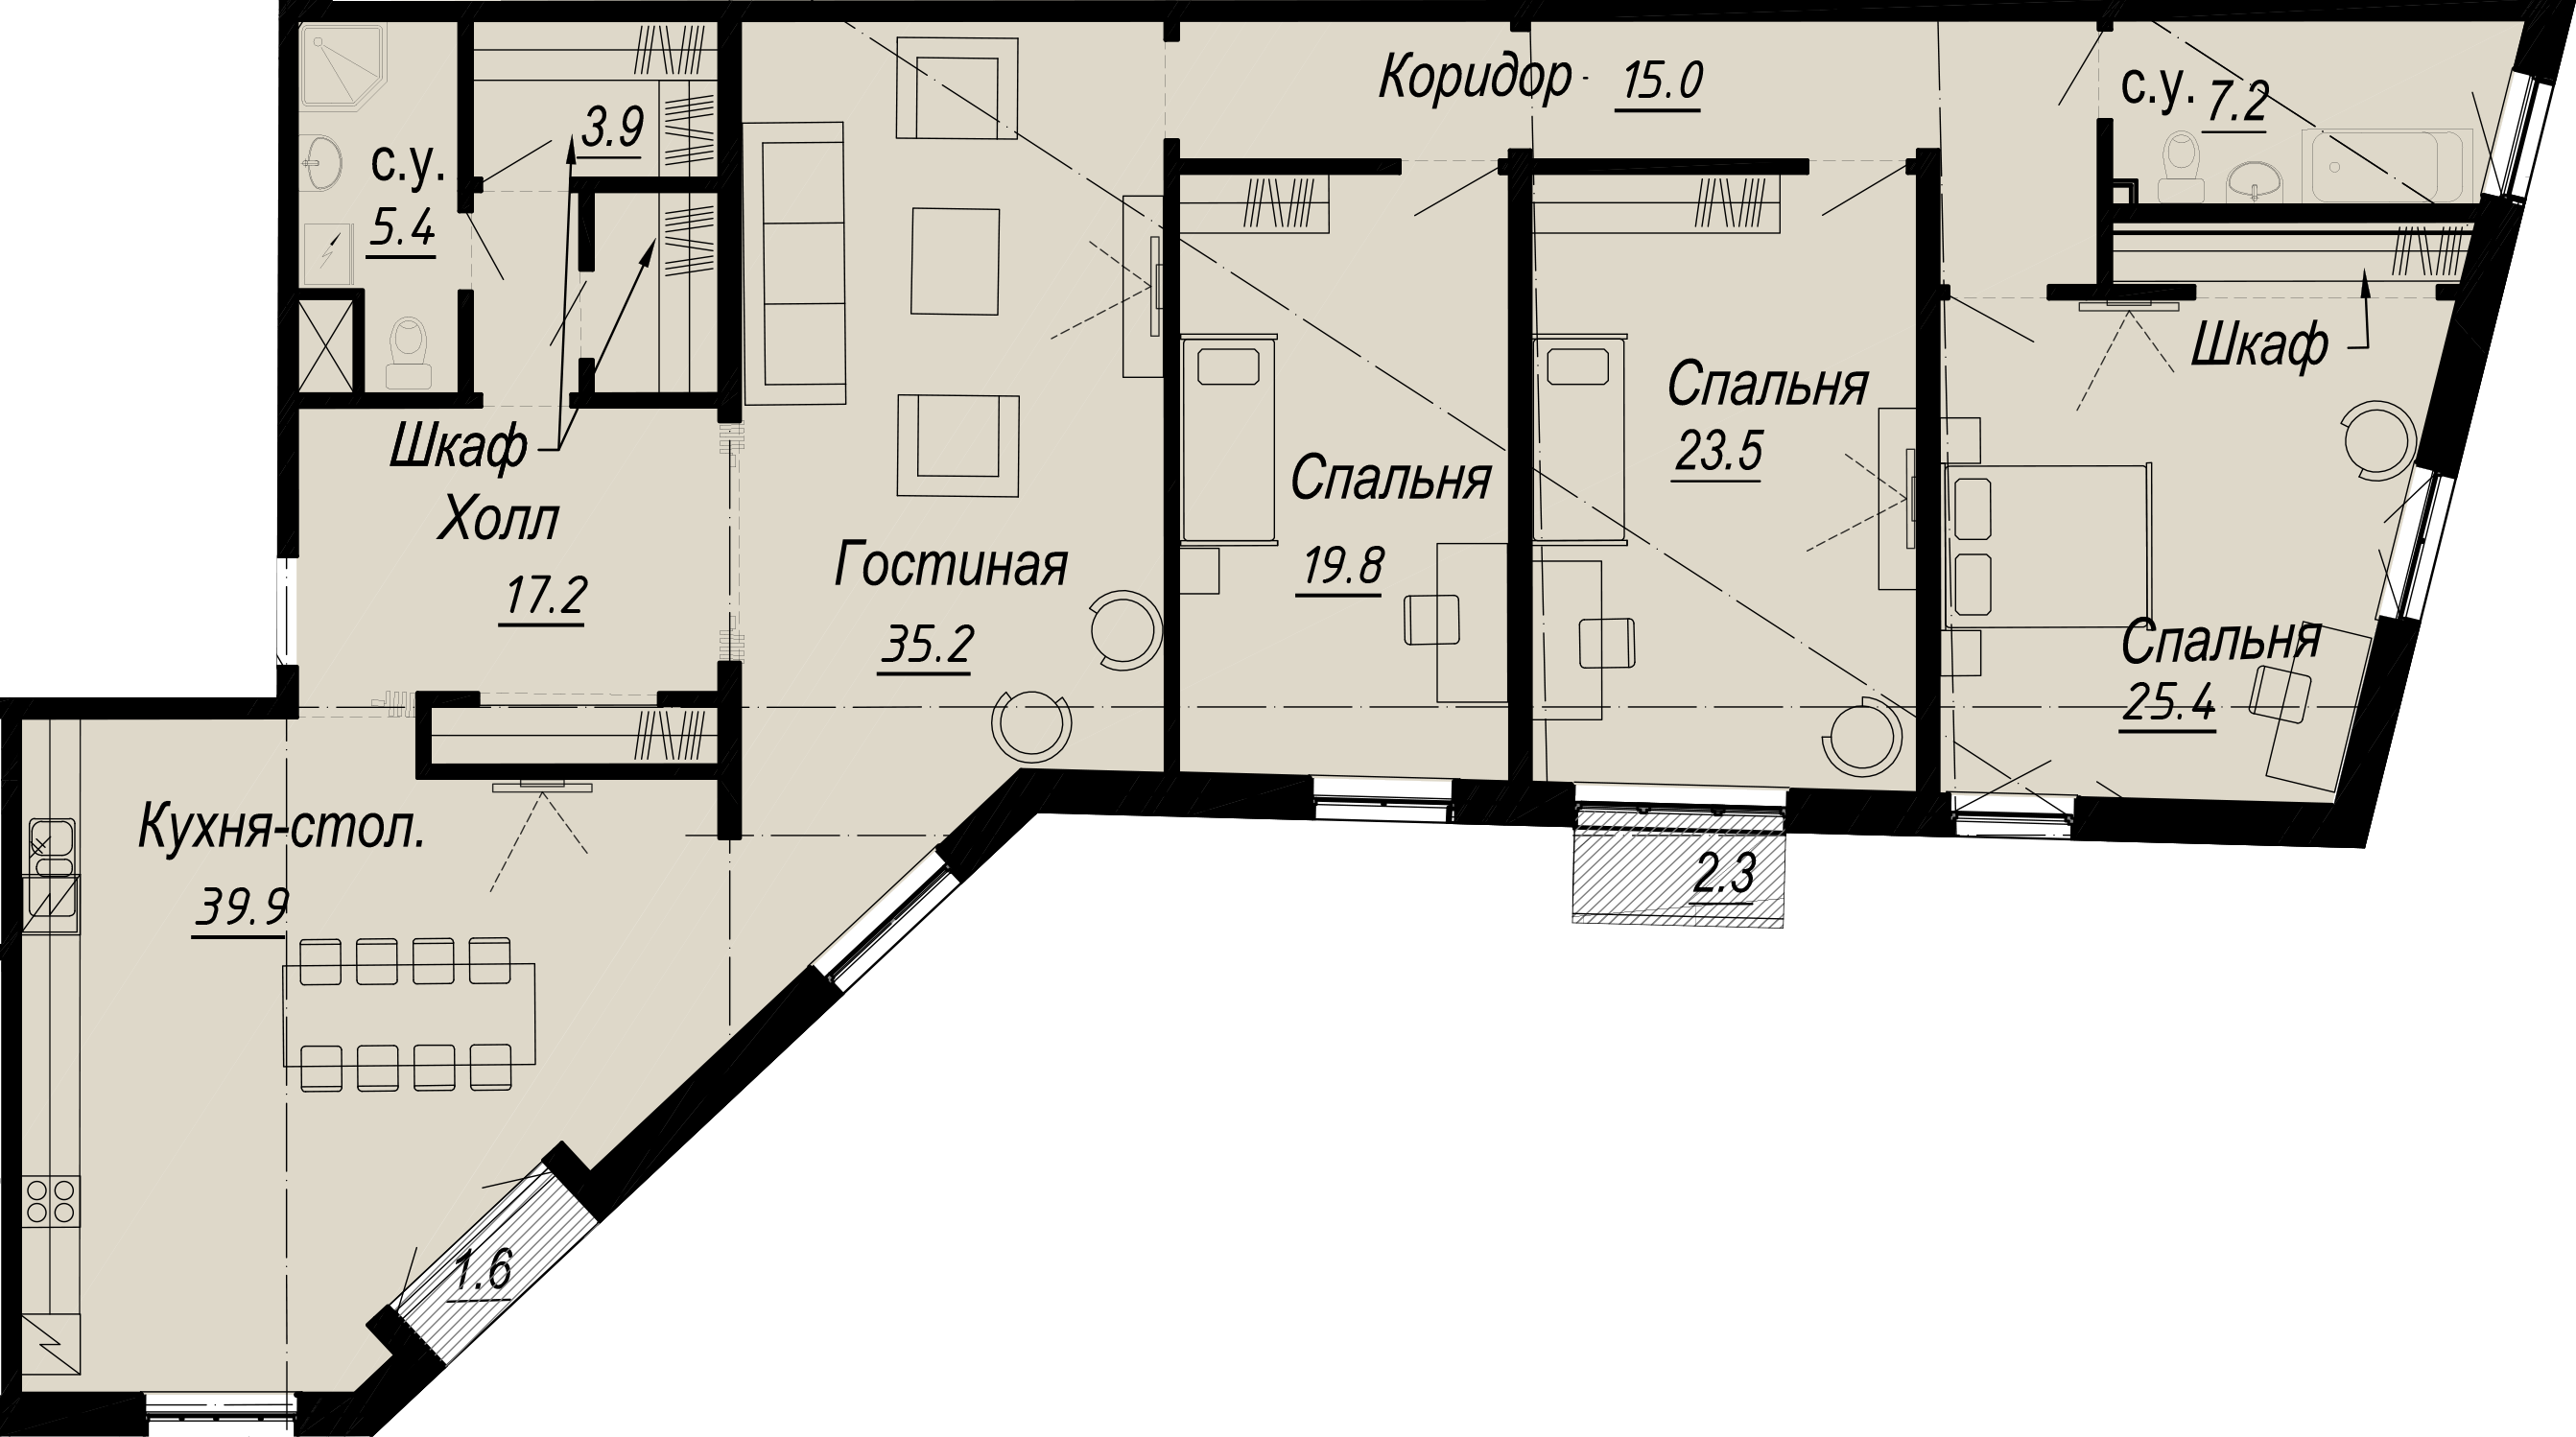 4-комнатная квартира  №7-6 в Meltzer Hall: 198.05 м², этаж 6 - купить в Санкт-Петербурге